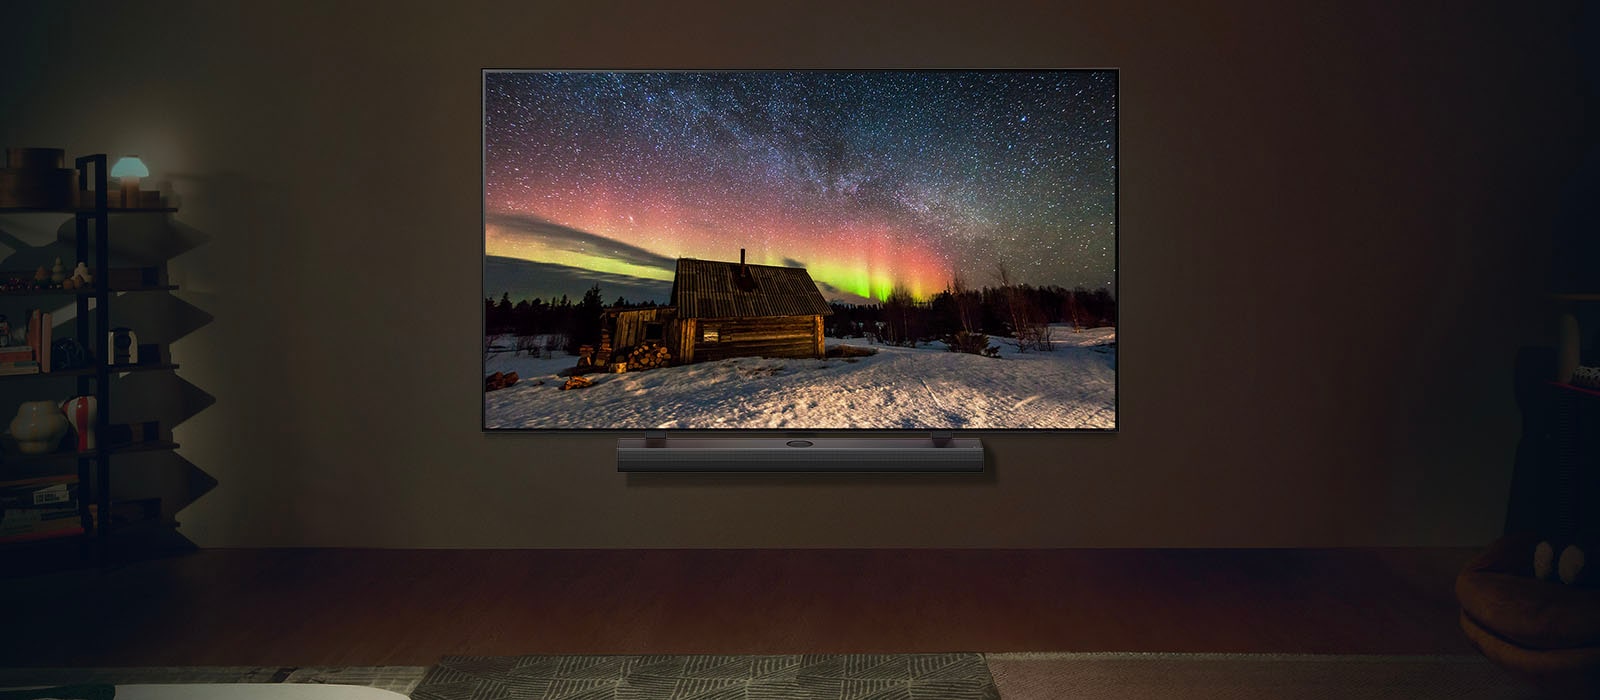 تلفزيون LG ومكبر صوت مسطح من LG في غرفة معيشة عصرية في أثناء الليل. تُعرَض صورة للشفق القطبي على الشاشة بمستويات سطوع مثالية.